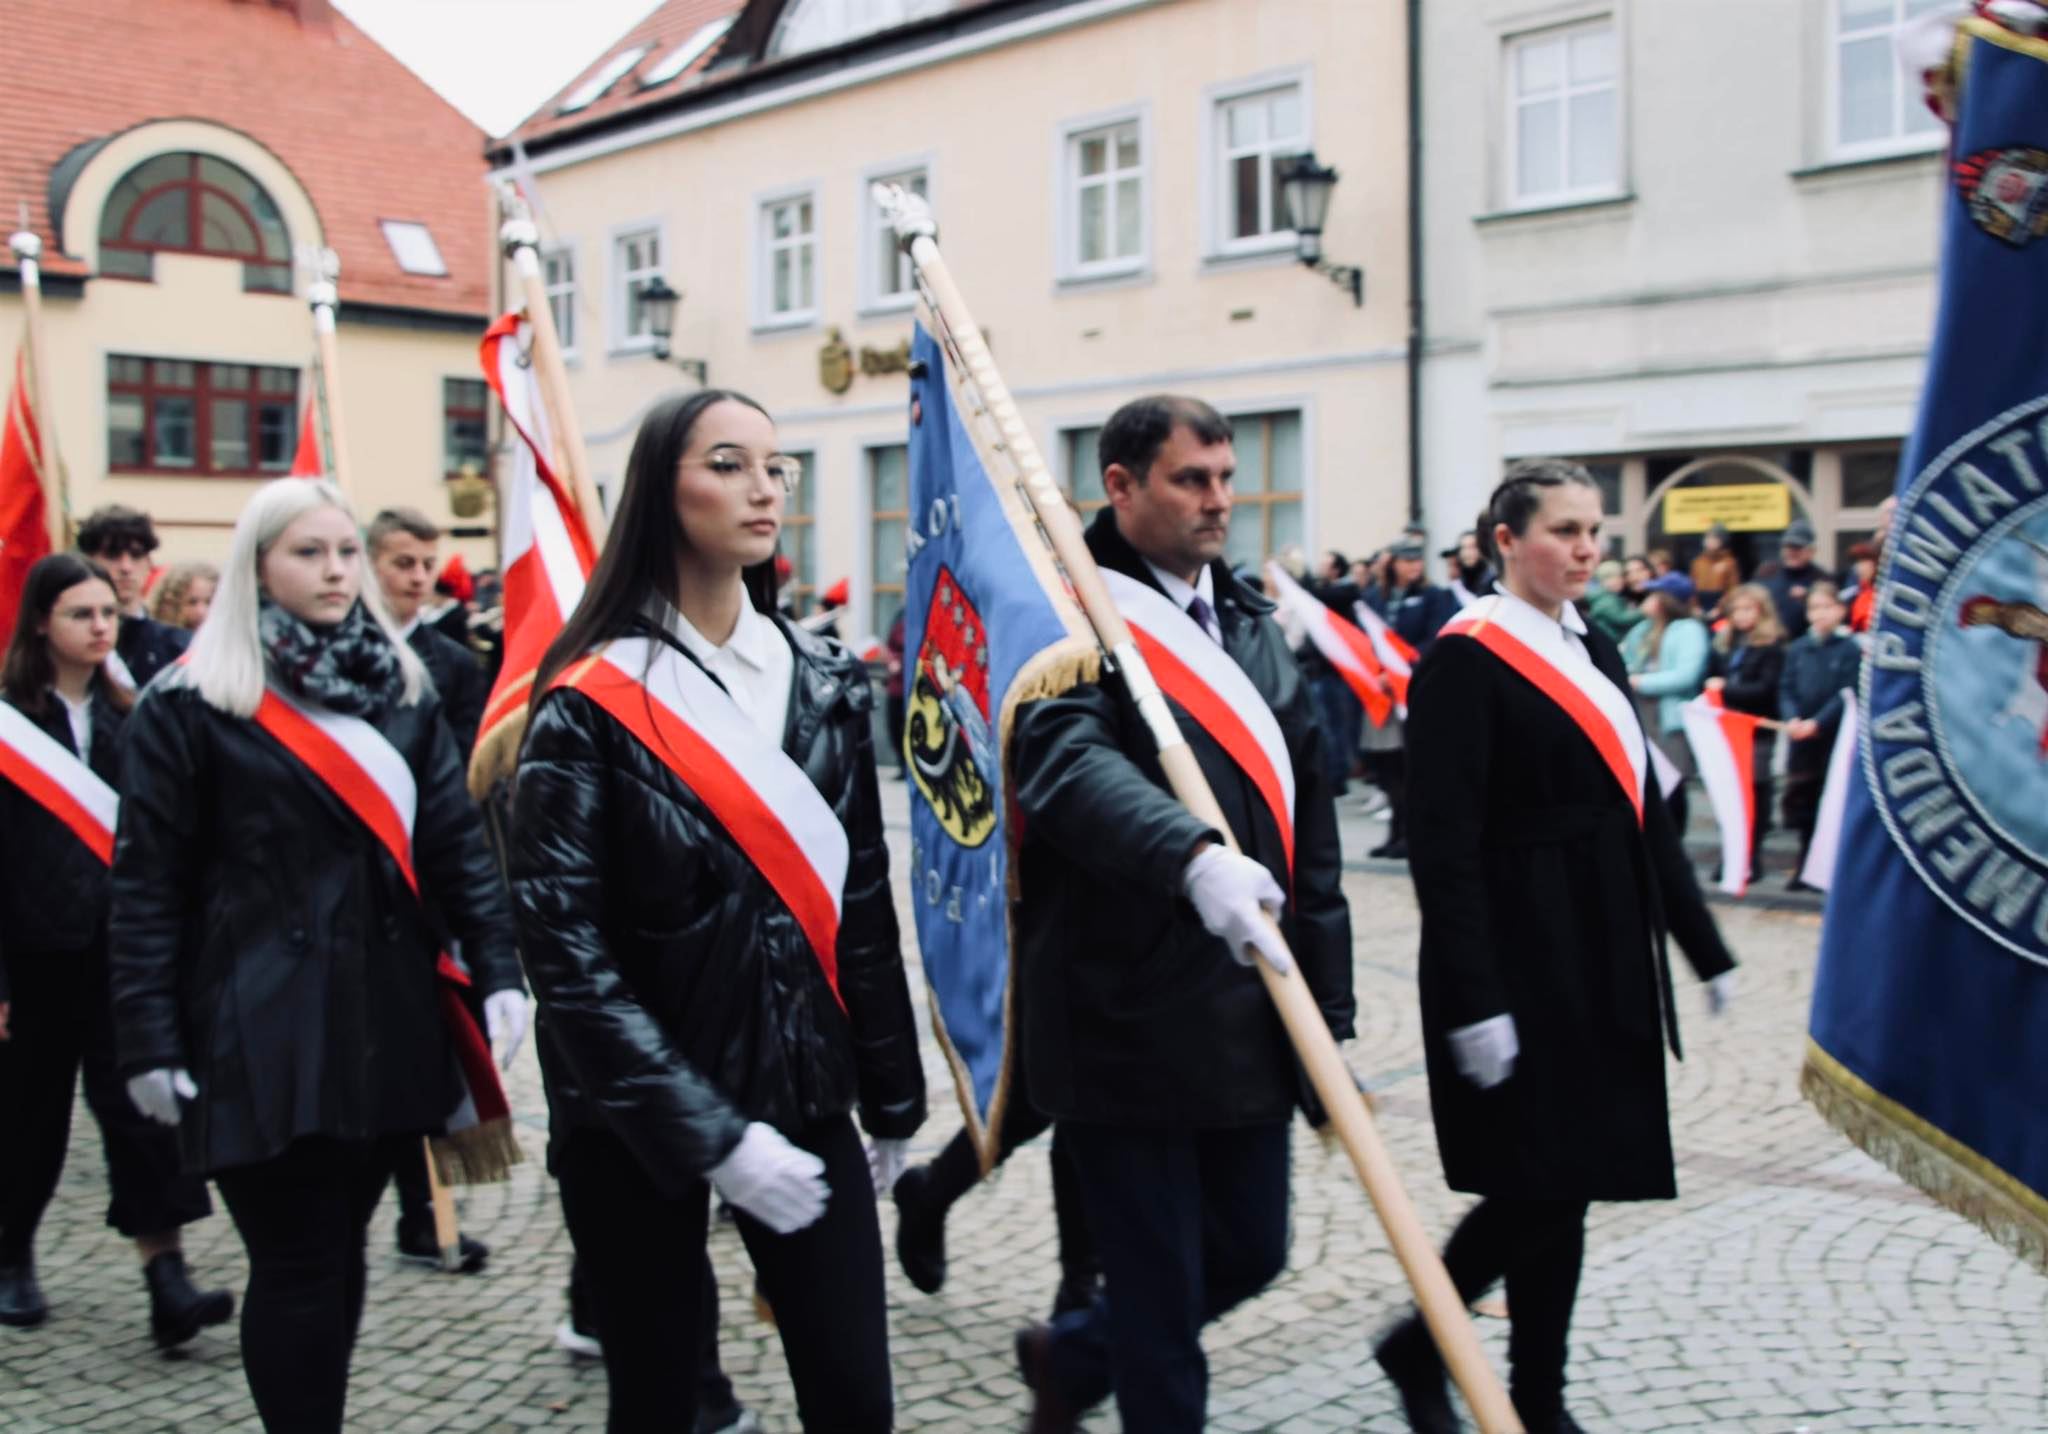 Poczet sztandarowy Starostwa Powiatowego w Polkowicach maszeruje podczas obchodów święta niepodległości w Polkowicach